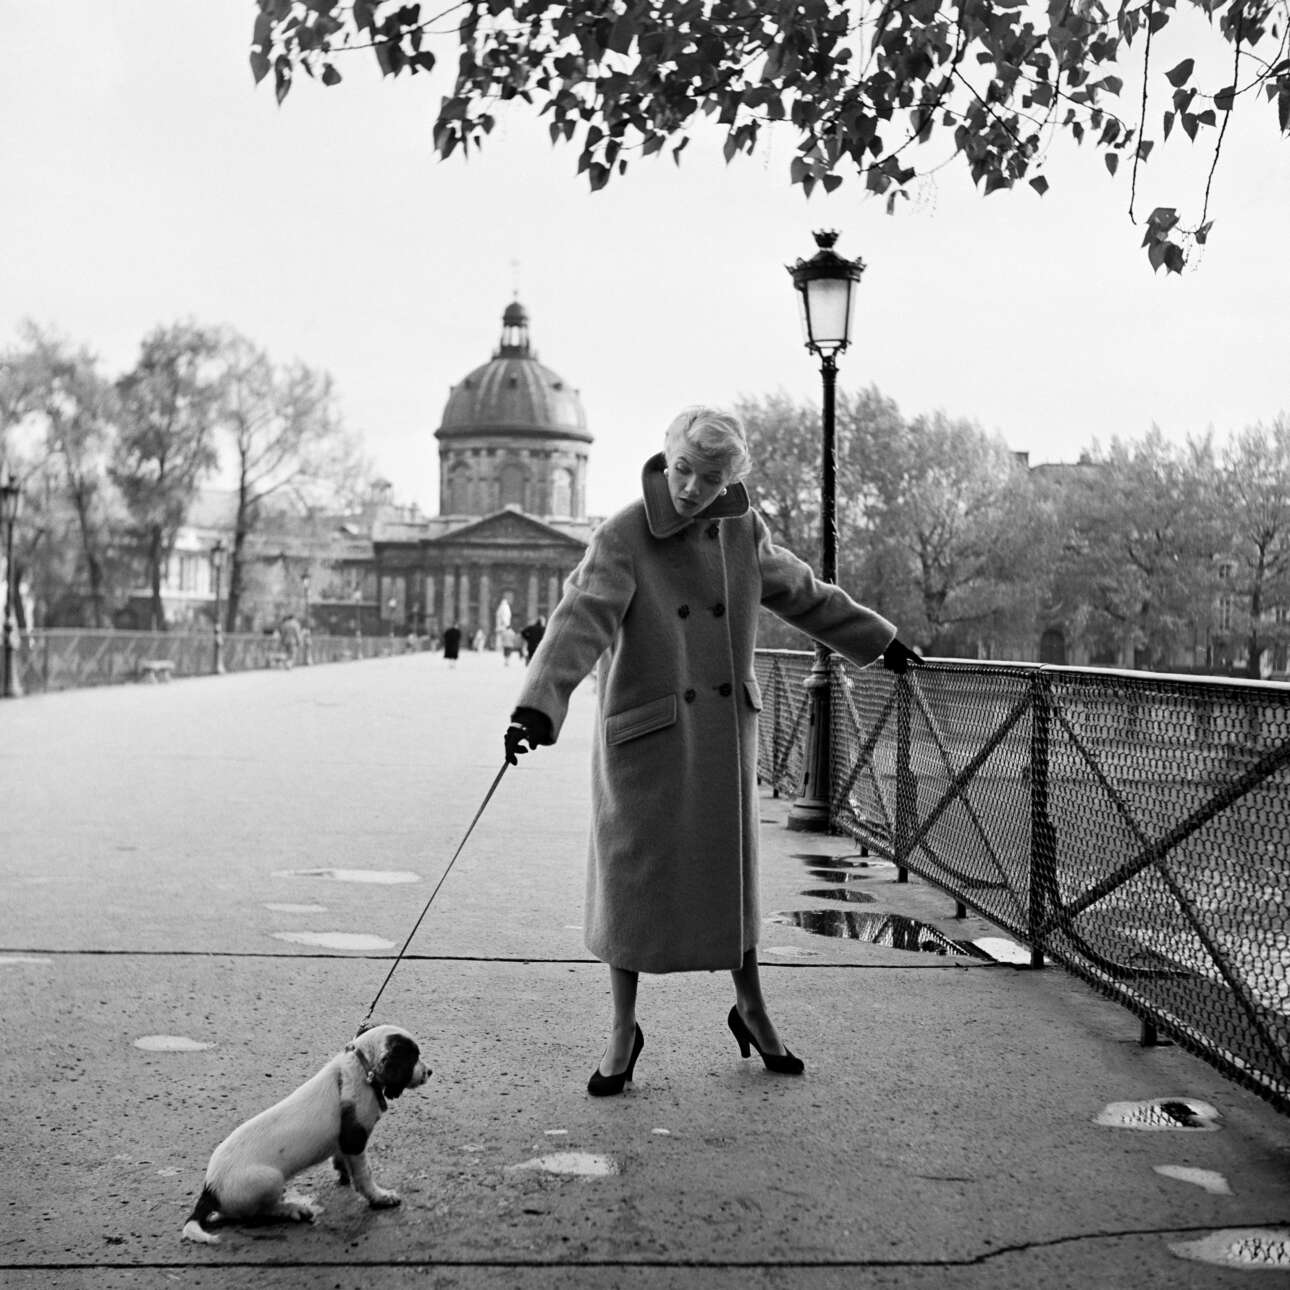 Μοντέλο και σκύλος, με διαφορετικές βουλήσεις, στη γέφυρα Passerelle des Arts, πάνω από τον Σηκουάνα, το 1955. «Τα μοντέλα γίνονται δύστροπα μερικές φορές και αυτός ο σκύλος δεν αποτέλεσε εξαίρεση», είχε σχολιάσει η Στάφορντ